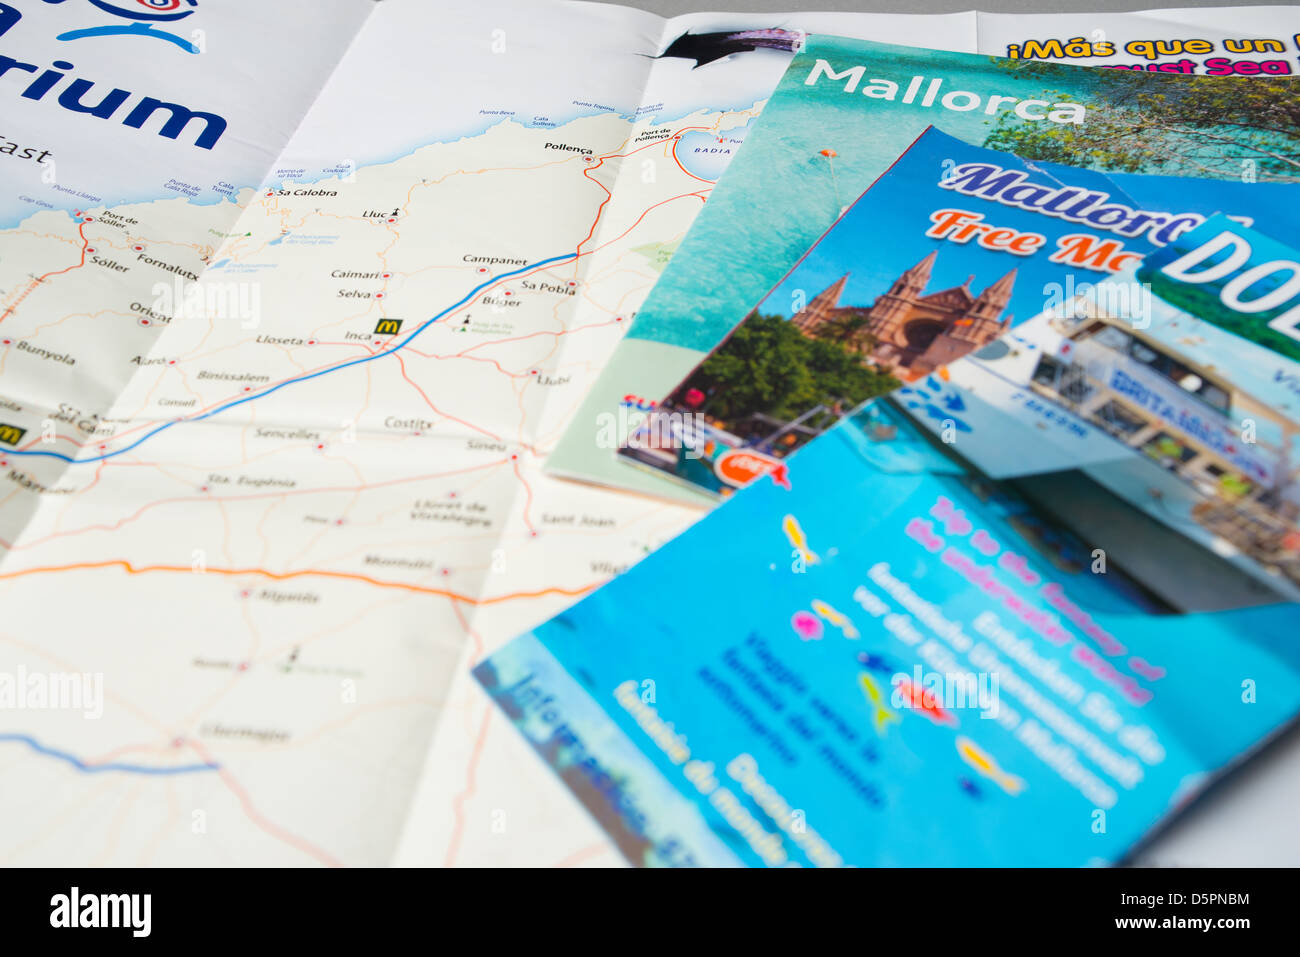 wijn Laan Bediening mogelijk Mallorca travel brochures and map Stock Photo - Alamy